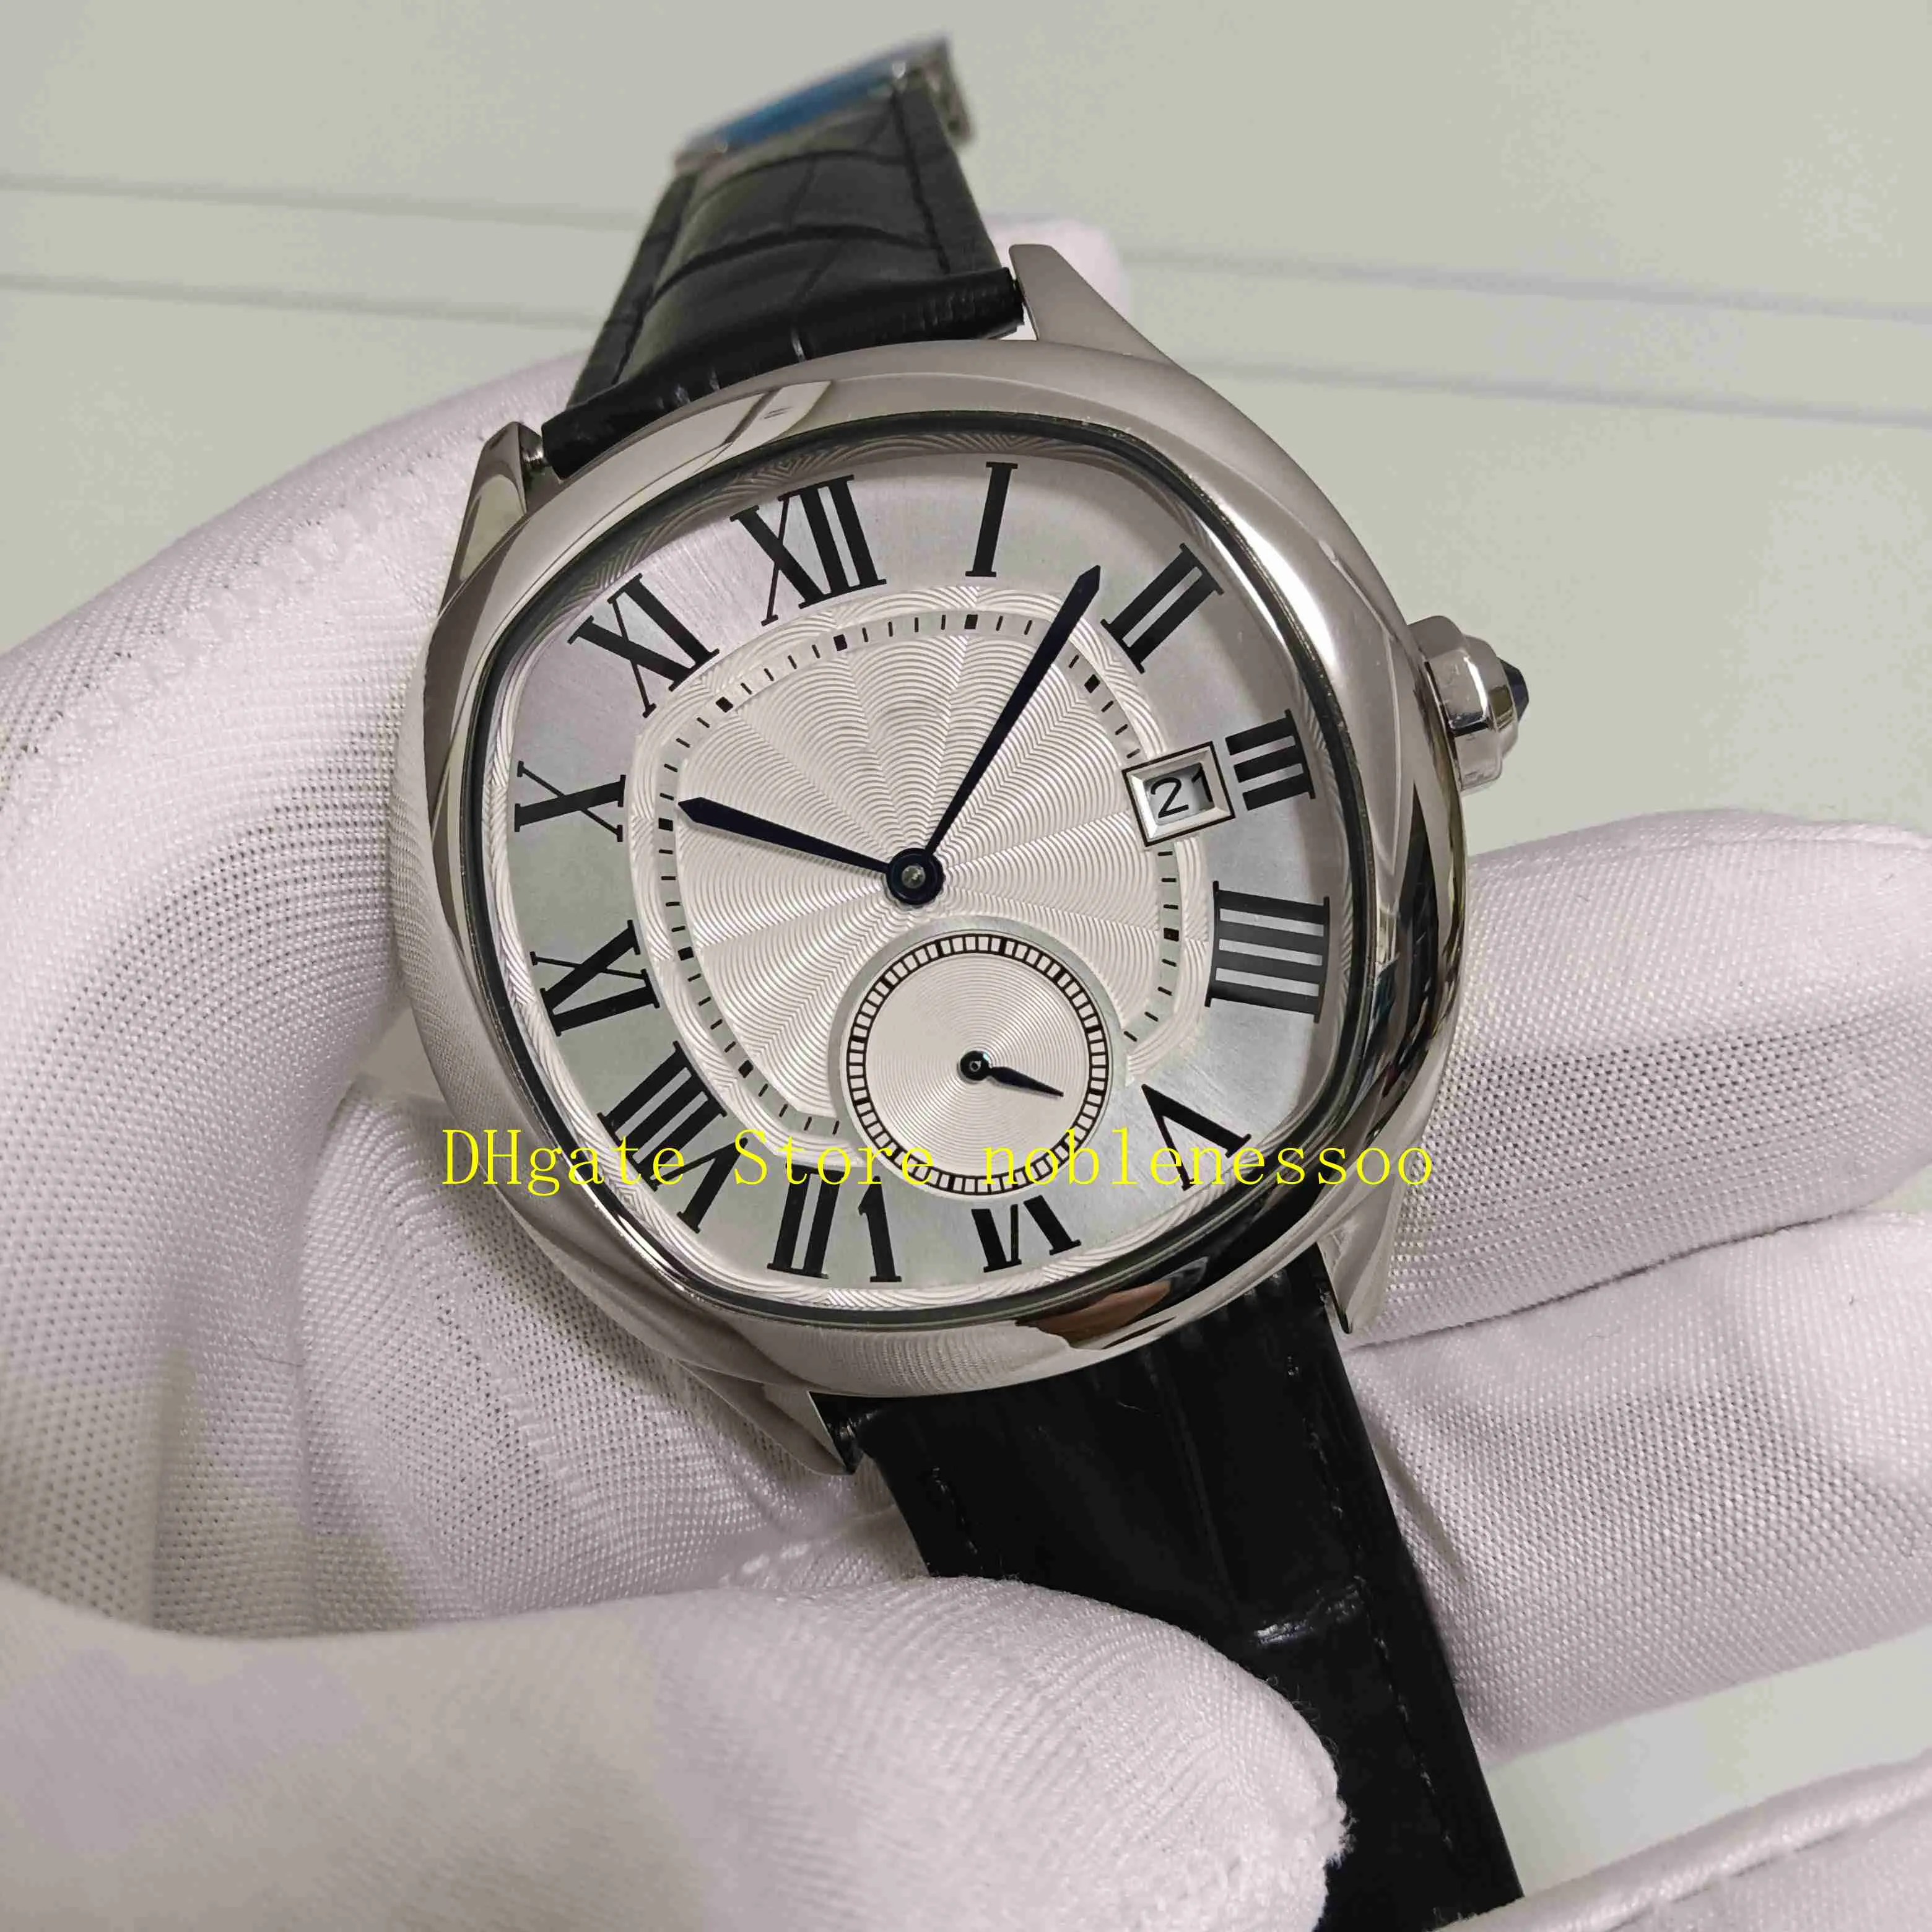 2 estilo real po com caixa original relógio masculino 40mm mostrador romano wgnm0003 wsnm0015 pulseira de couro fecho dobrável automático 229k